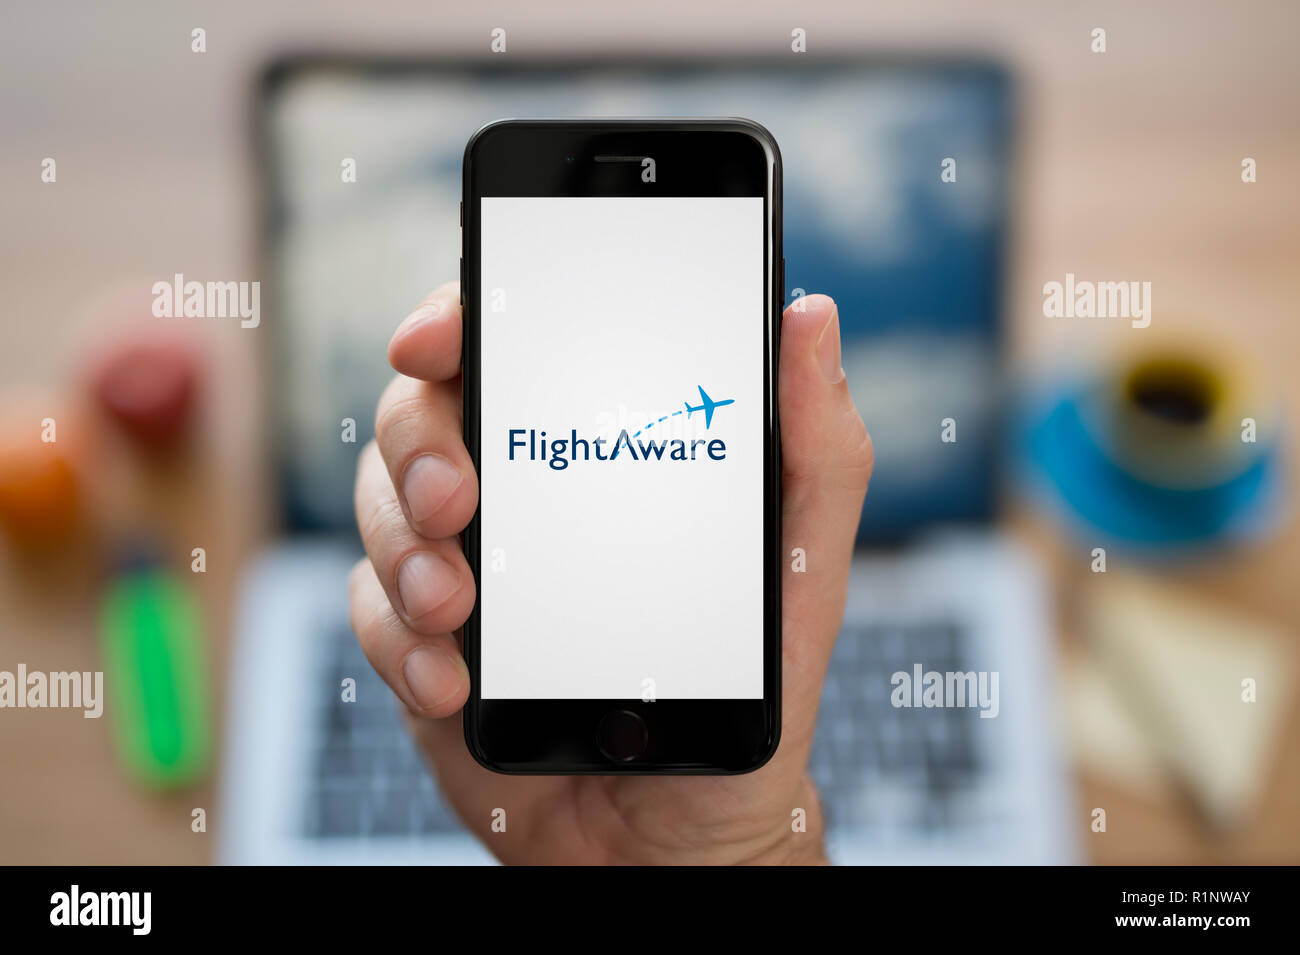 Ein Mann schaut auf seinem iPhone die zeigt den Flug bewusst Logo, während saß an seinem Computer Schreibtisch (nur redaktionelle Nutzung). Stockfoto